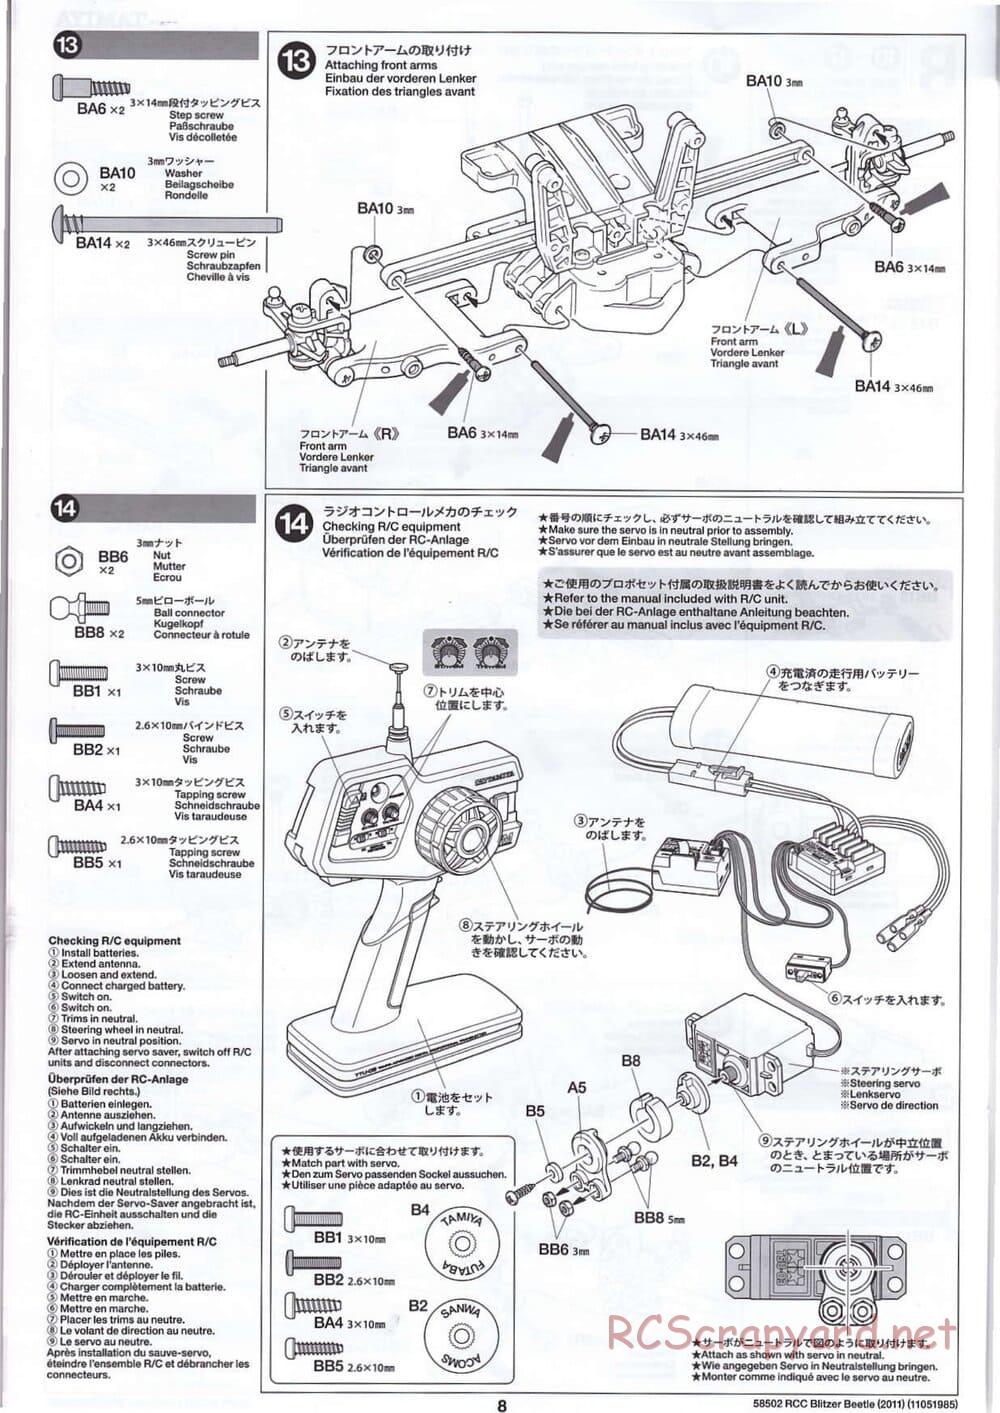 Tamiya - Blitzer Beetle 2011 - FAL Chassis - Manual - Page 8